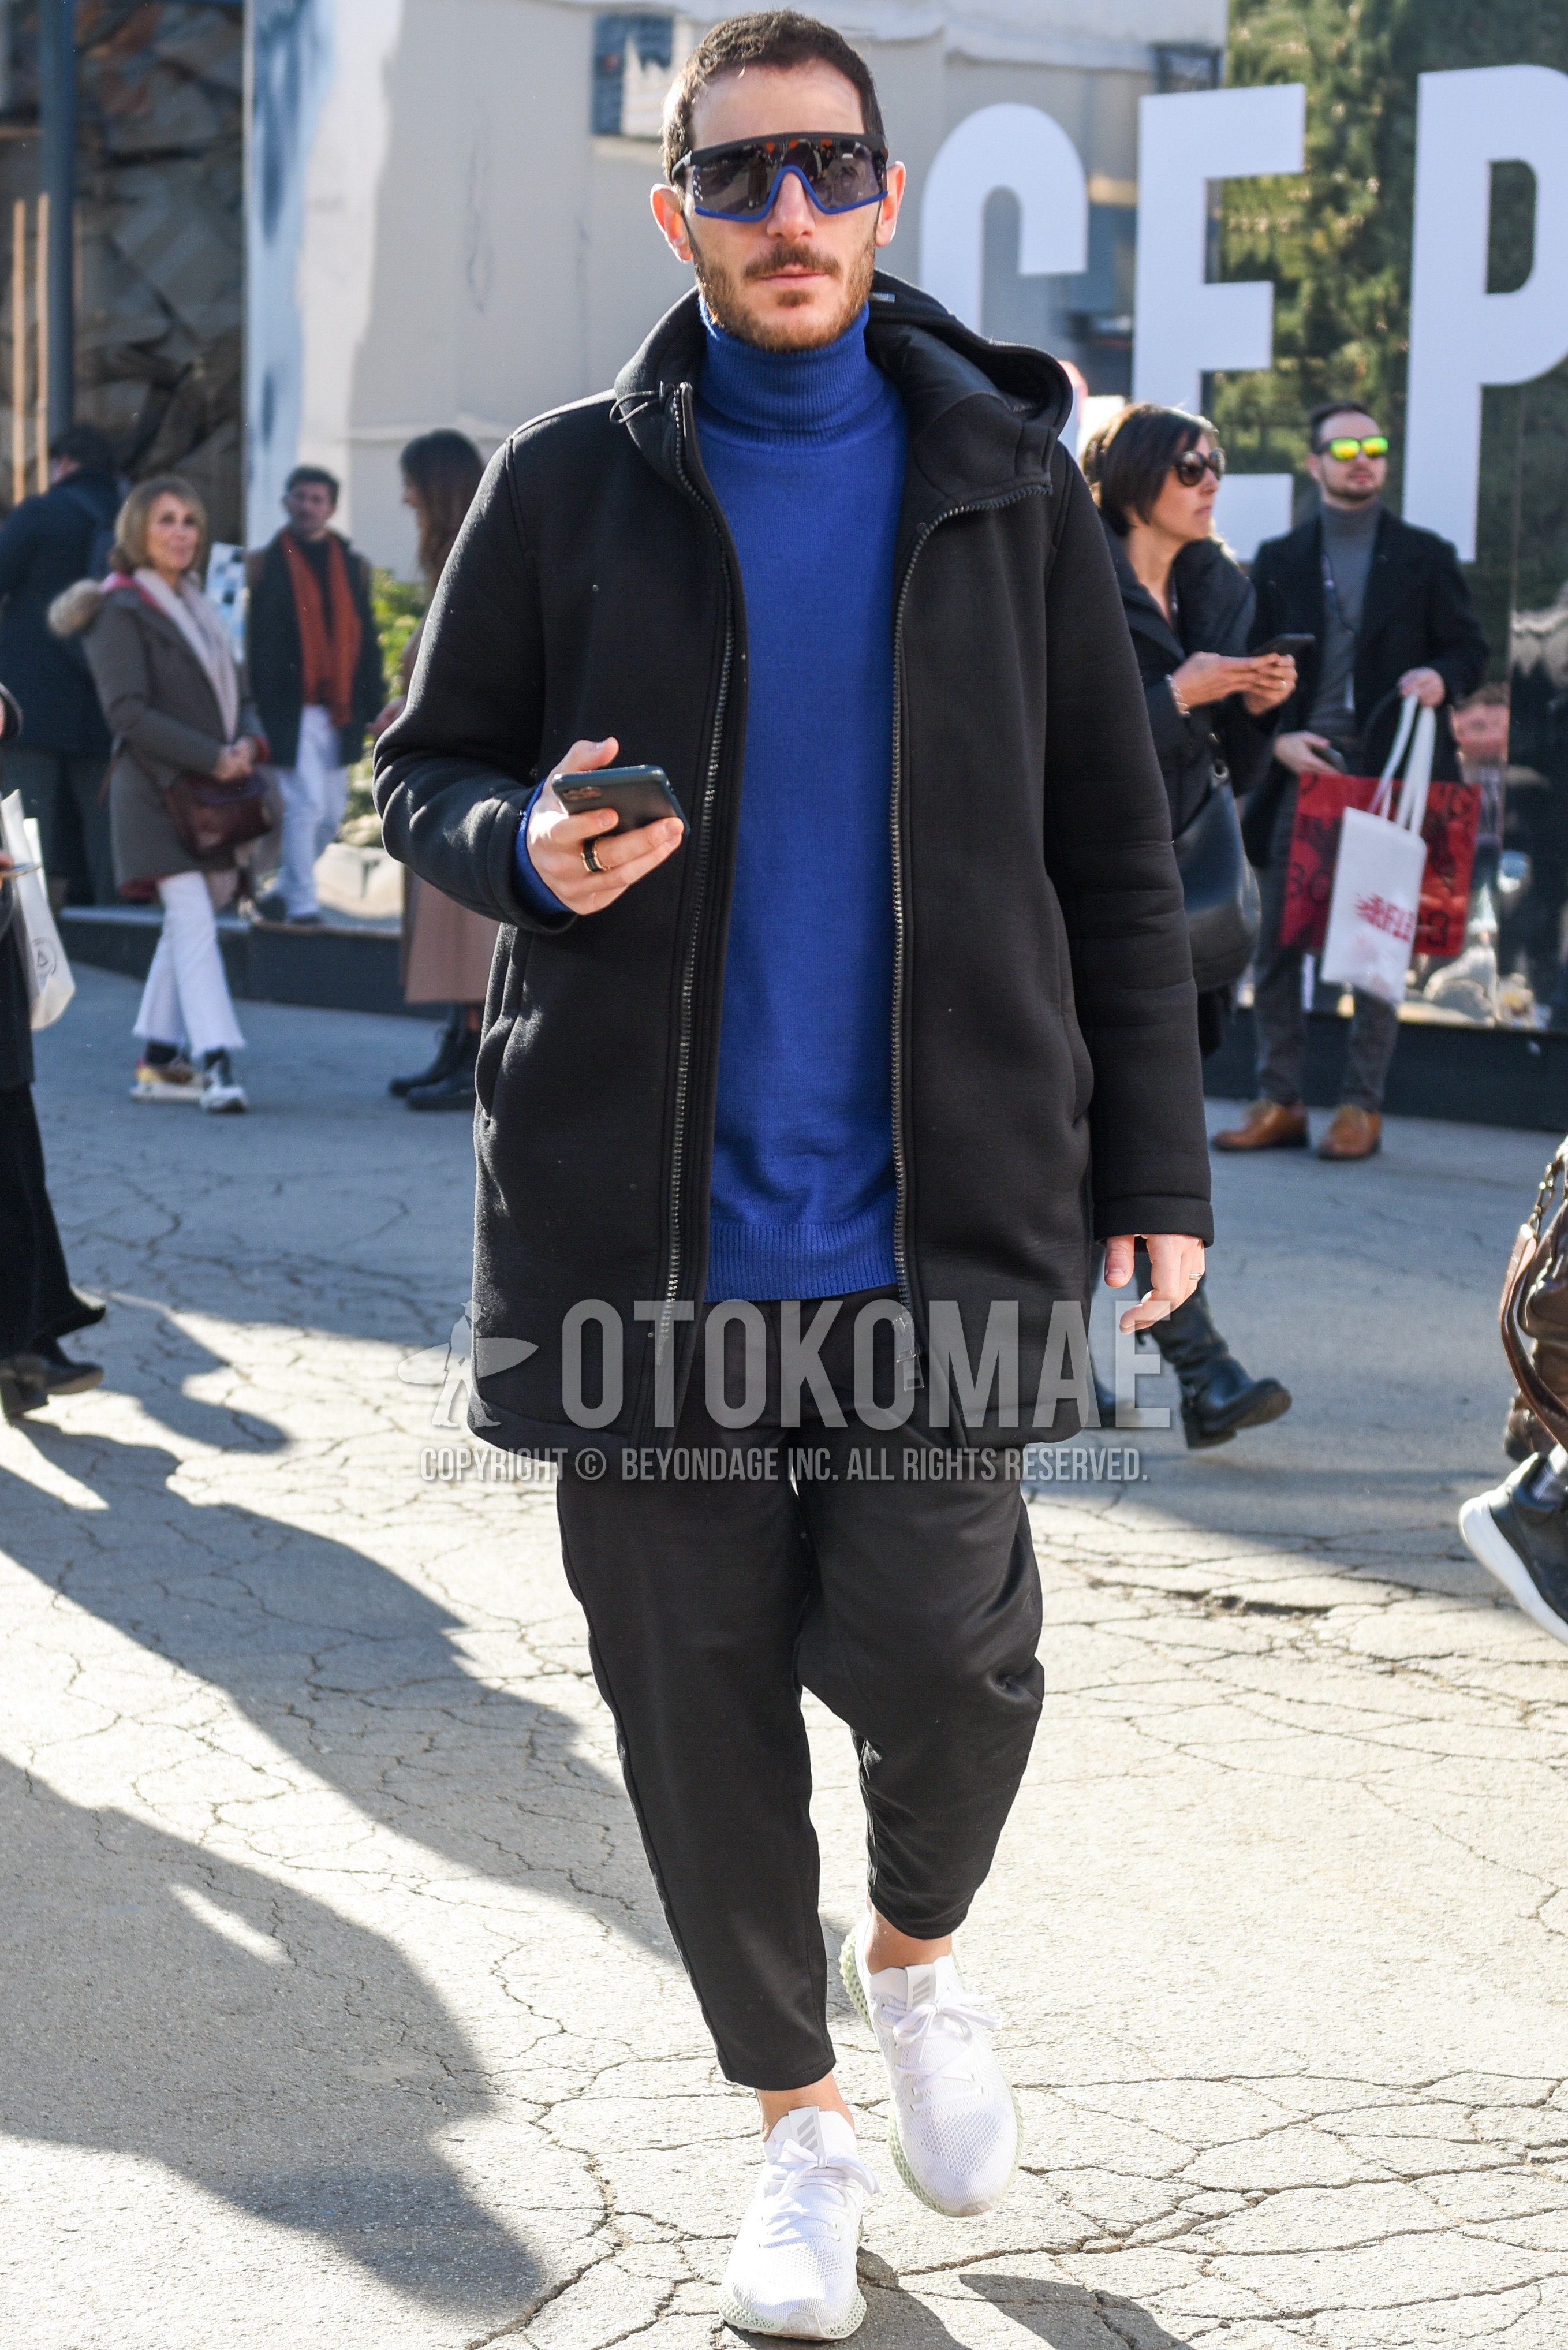 Men's autumn winter outfit with black blue plain sunglasses, black plain hooded coat, gray plain turtleneck knit, gray plain ankle pants, white low-cut sneakers.